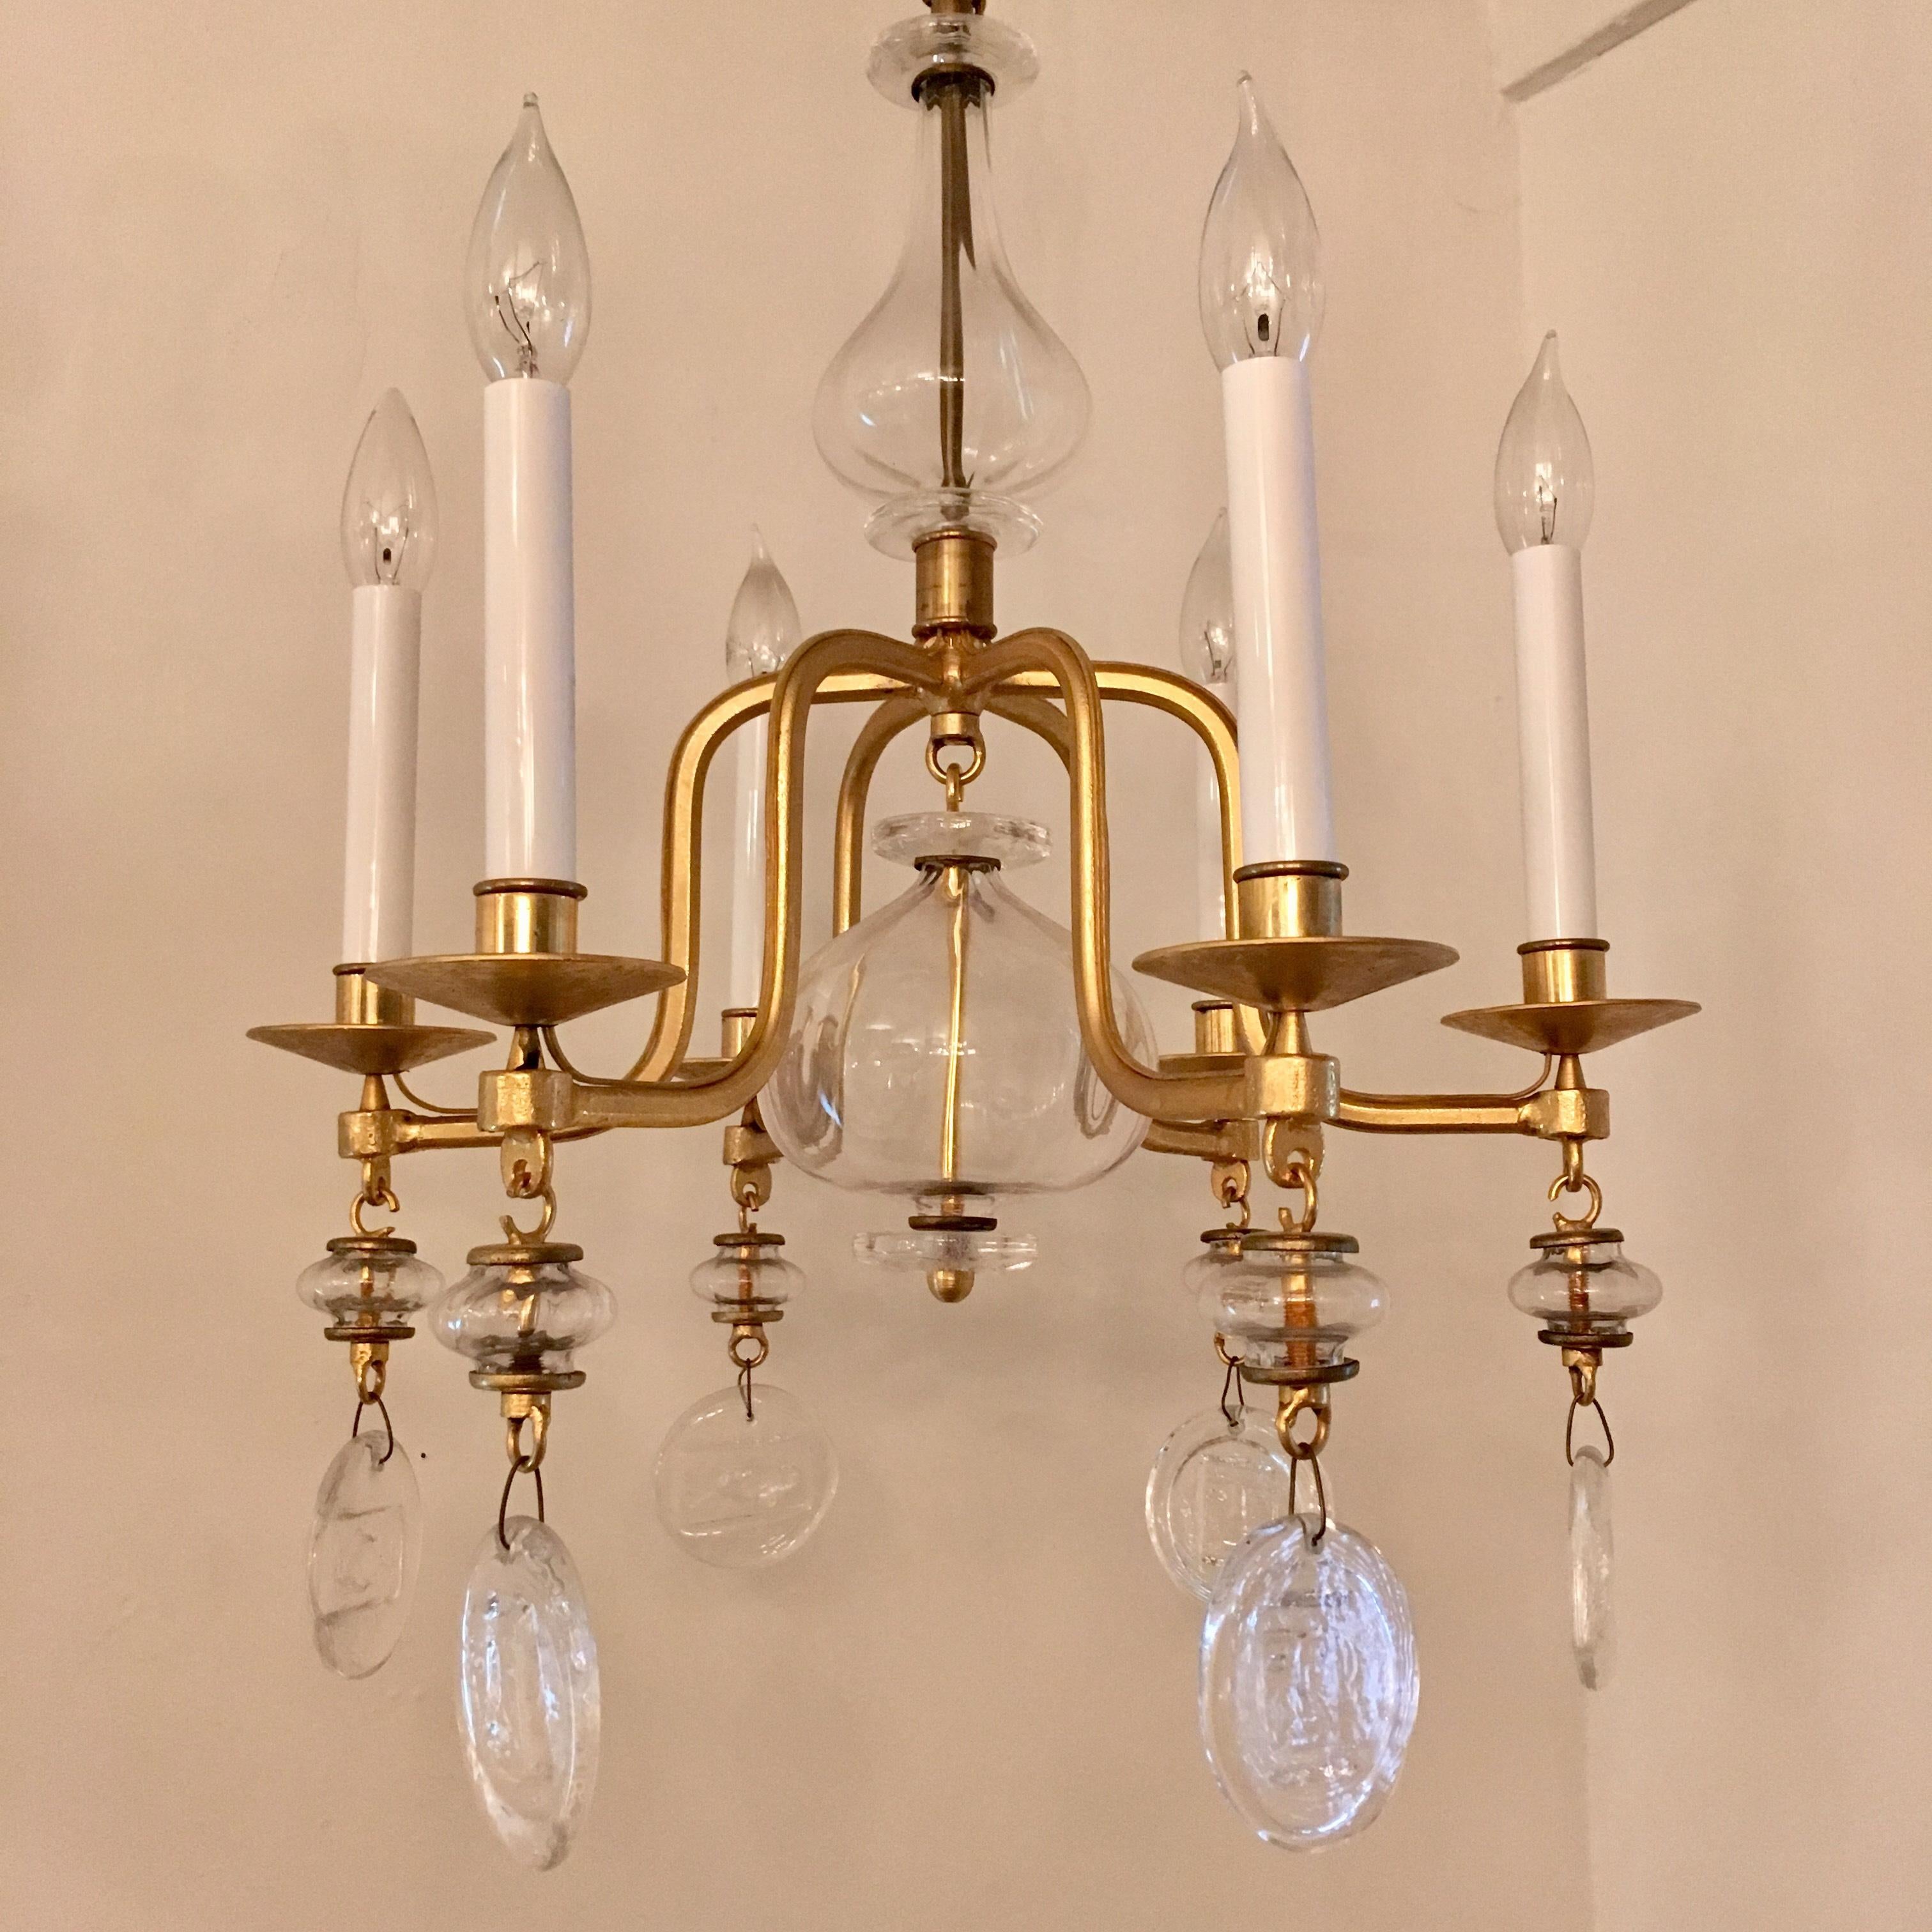 A 1960s Erik Hoglund for Kosta Boda six-light gilded chandelier with handblown glass elements. Rewired. 48